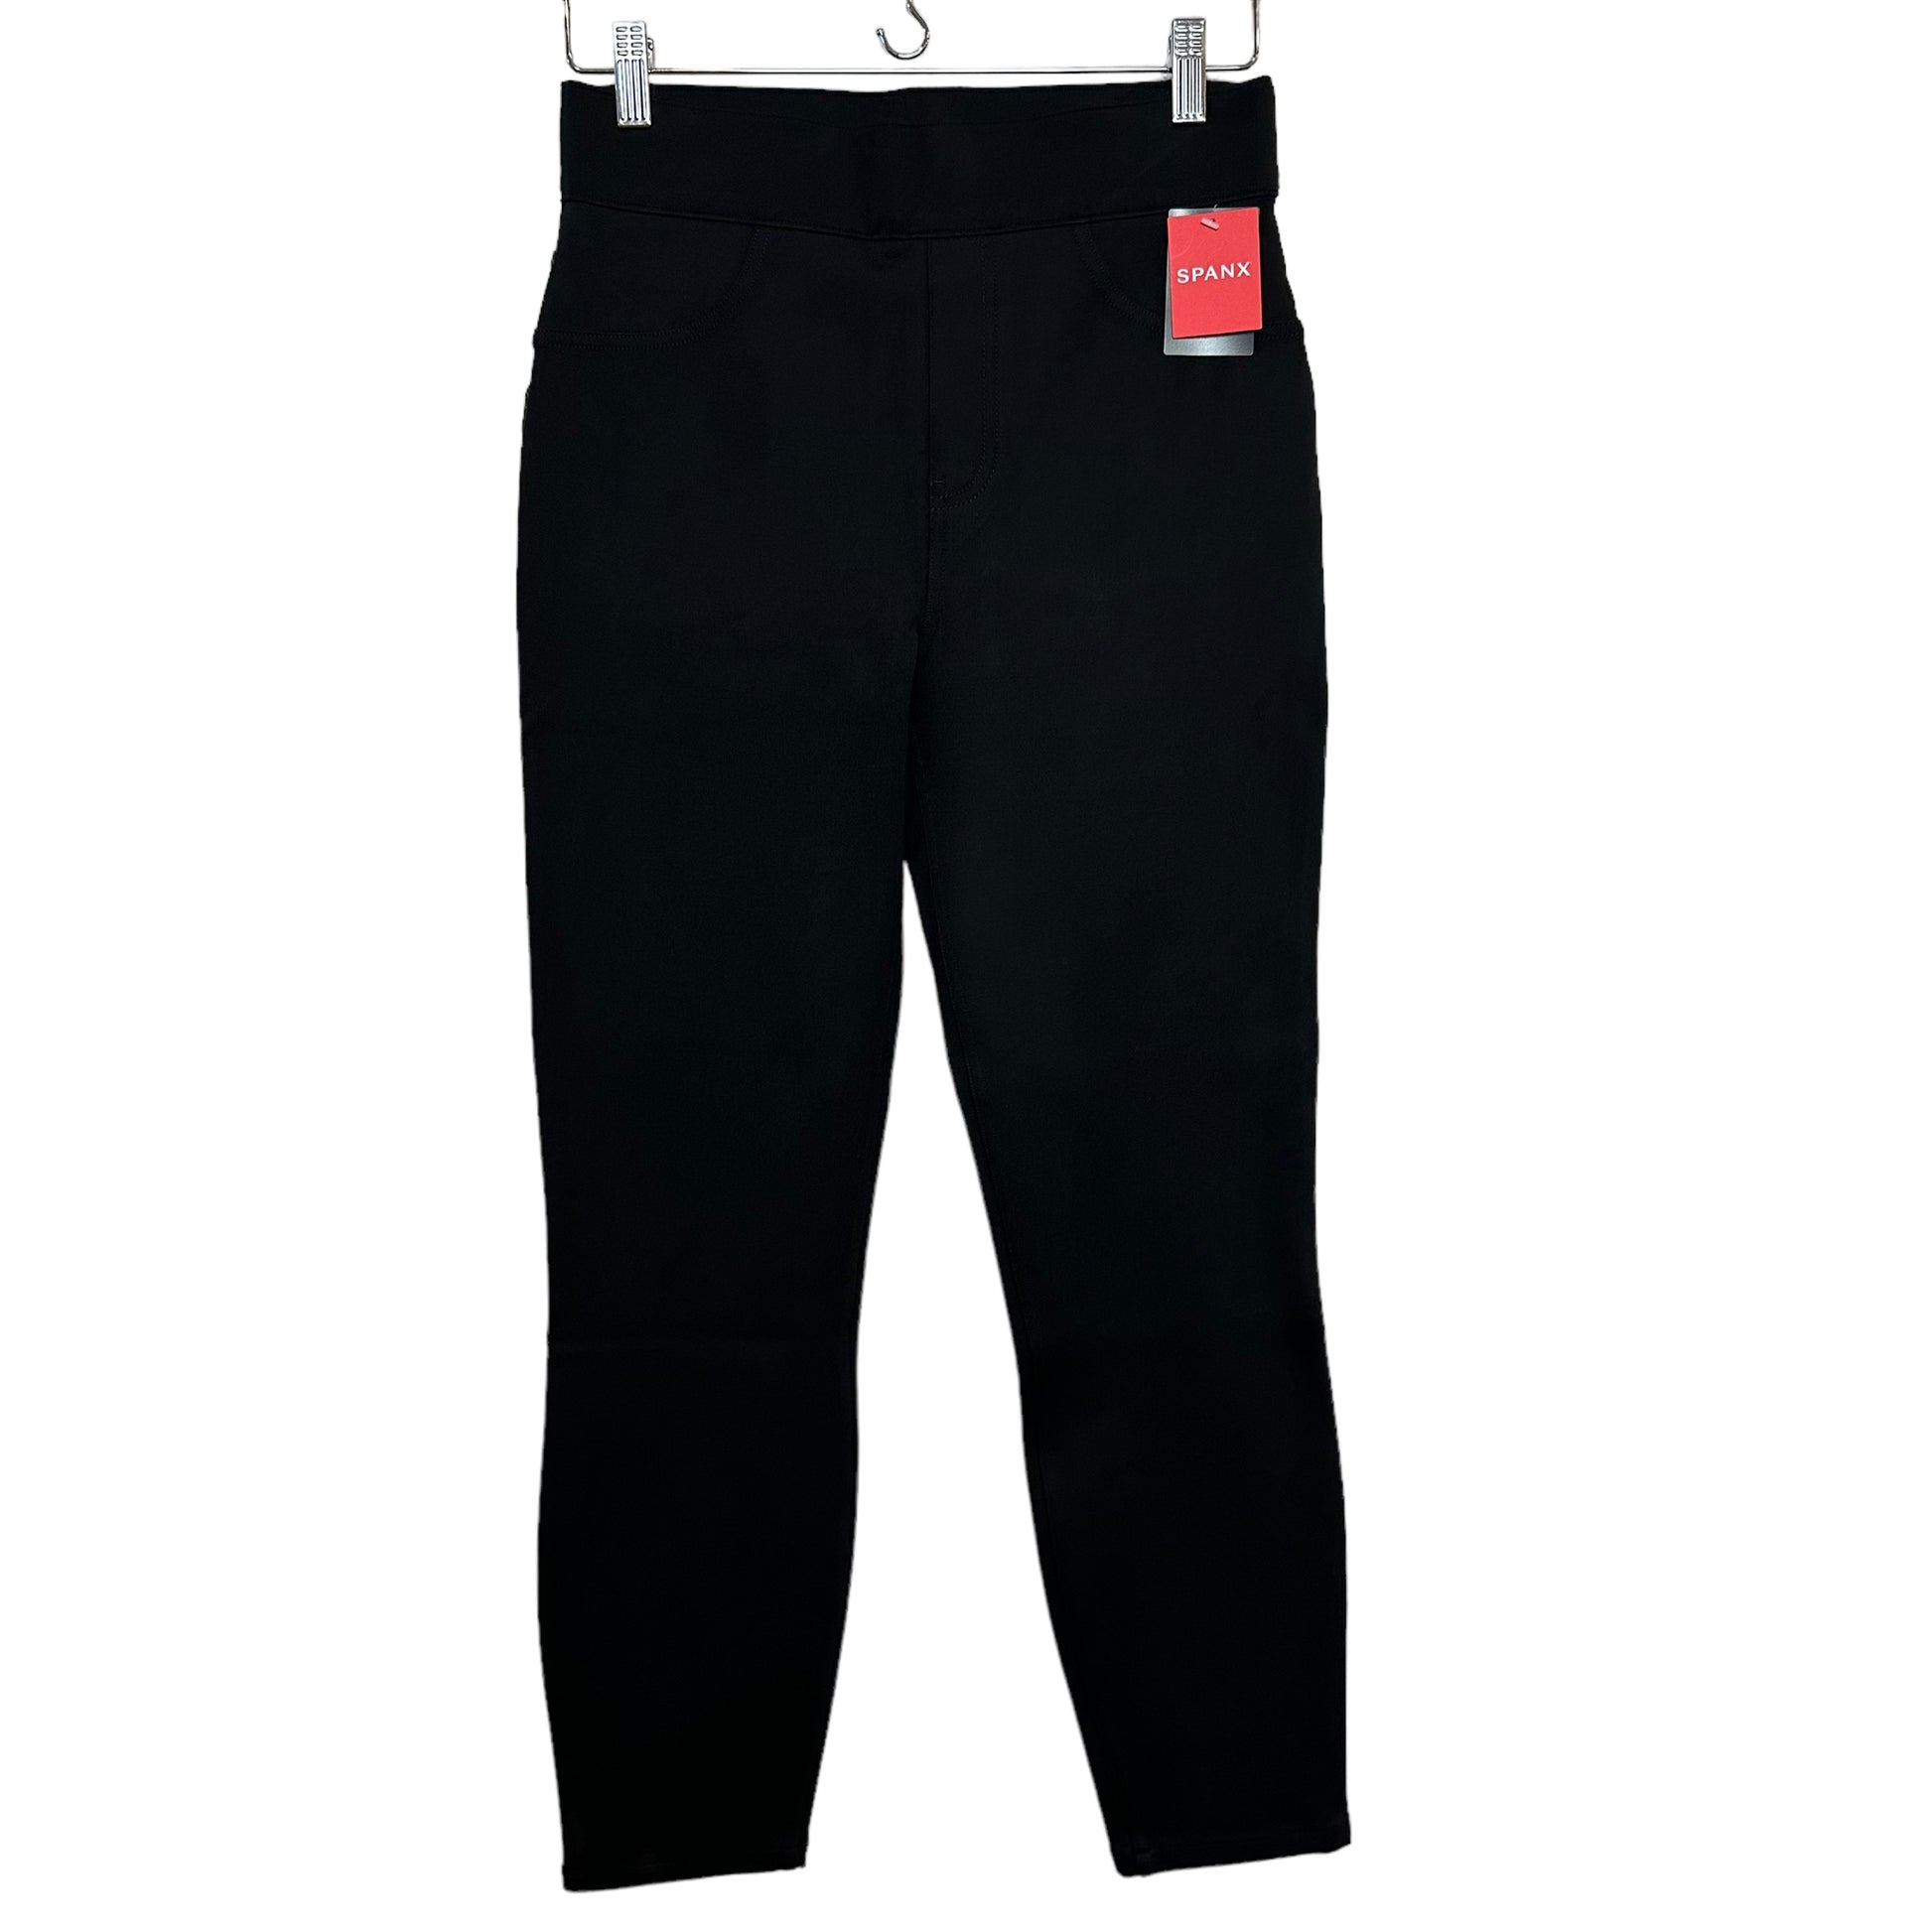 Straight-Leg, 7-Pocket Dress Pant Yoga Pants (Black)